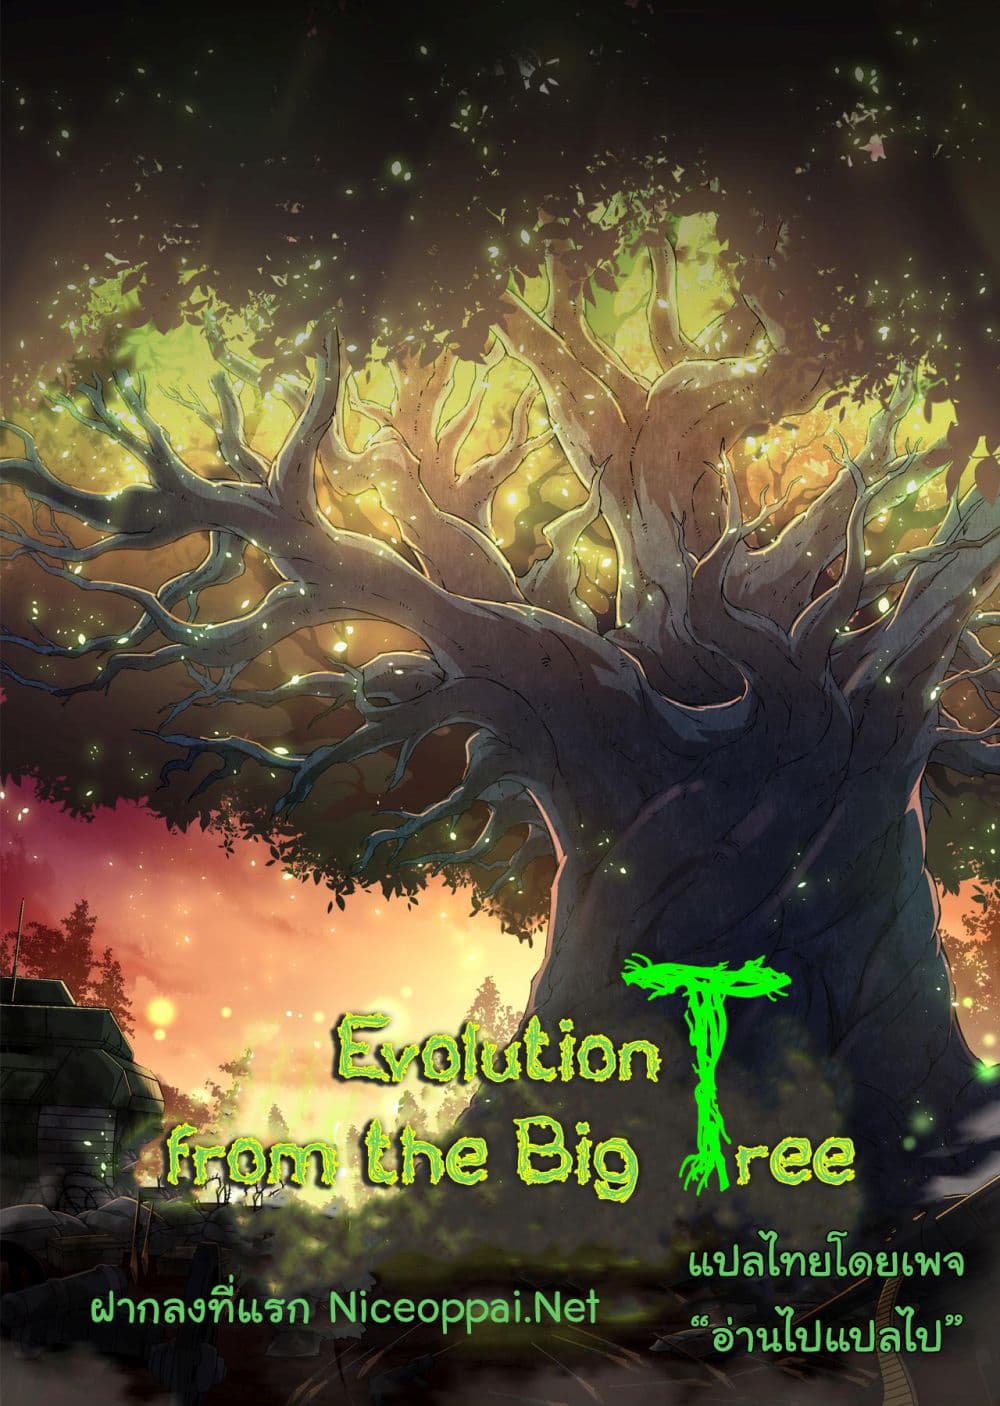 Evolution from the Big Tree Ã Â¸â€¢Ã Â¸Â­Ã Â¸â„¢Ã Â¸â€”Ã Â¸ÂµÃ Â¹Ë† 6 (54)